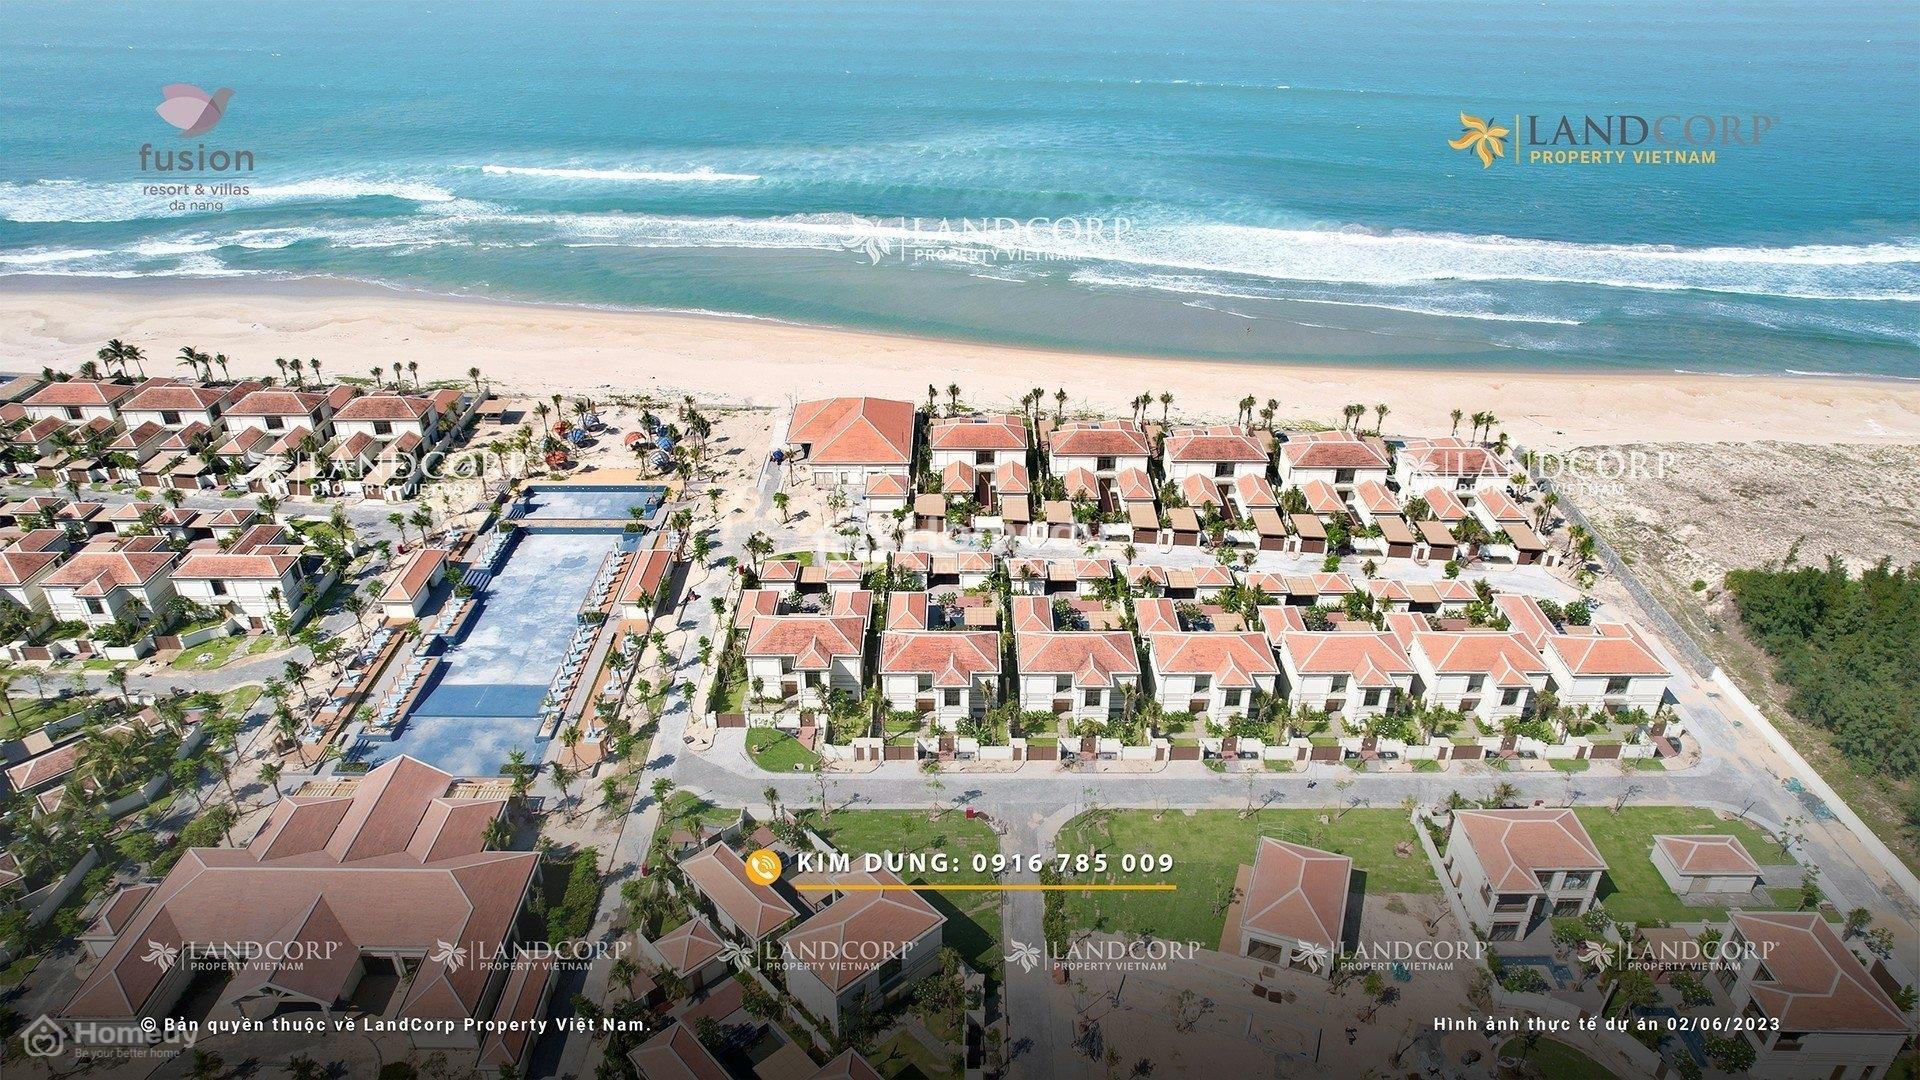 Thông Tin Chi Tiết Về Biệt Thự Mặt Biển Beachfront Fusion Resort And Villas Đà Nẵng